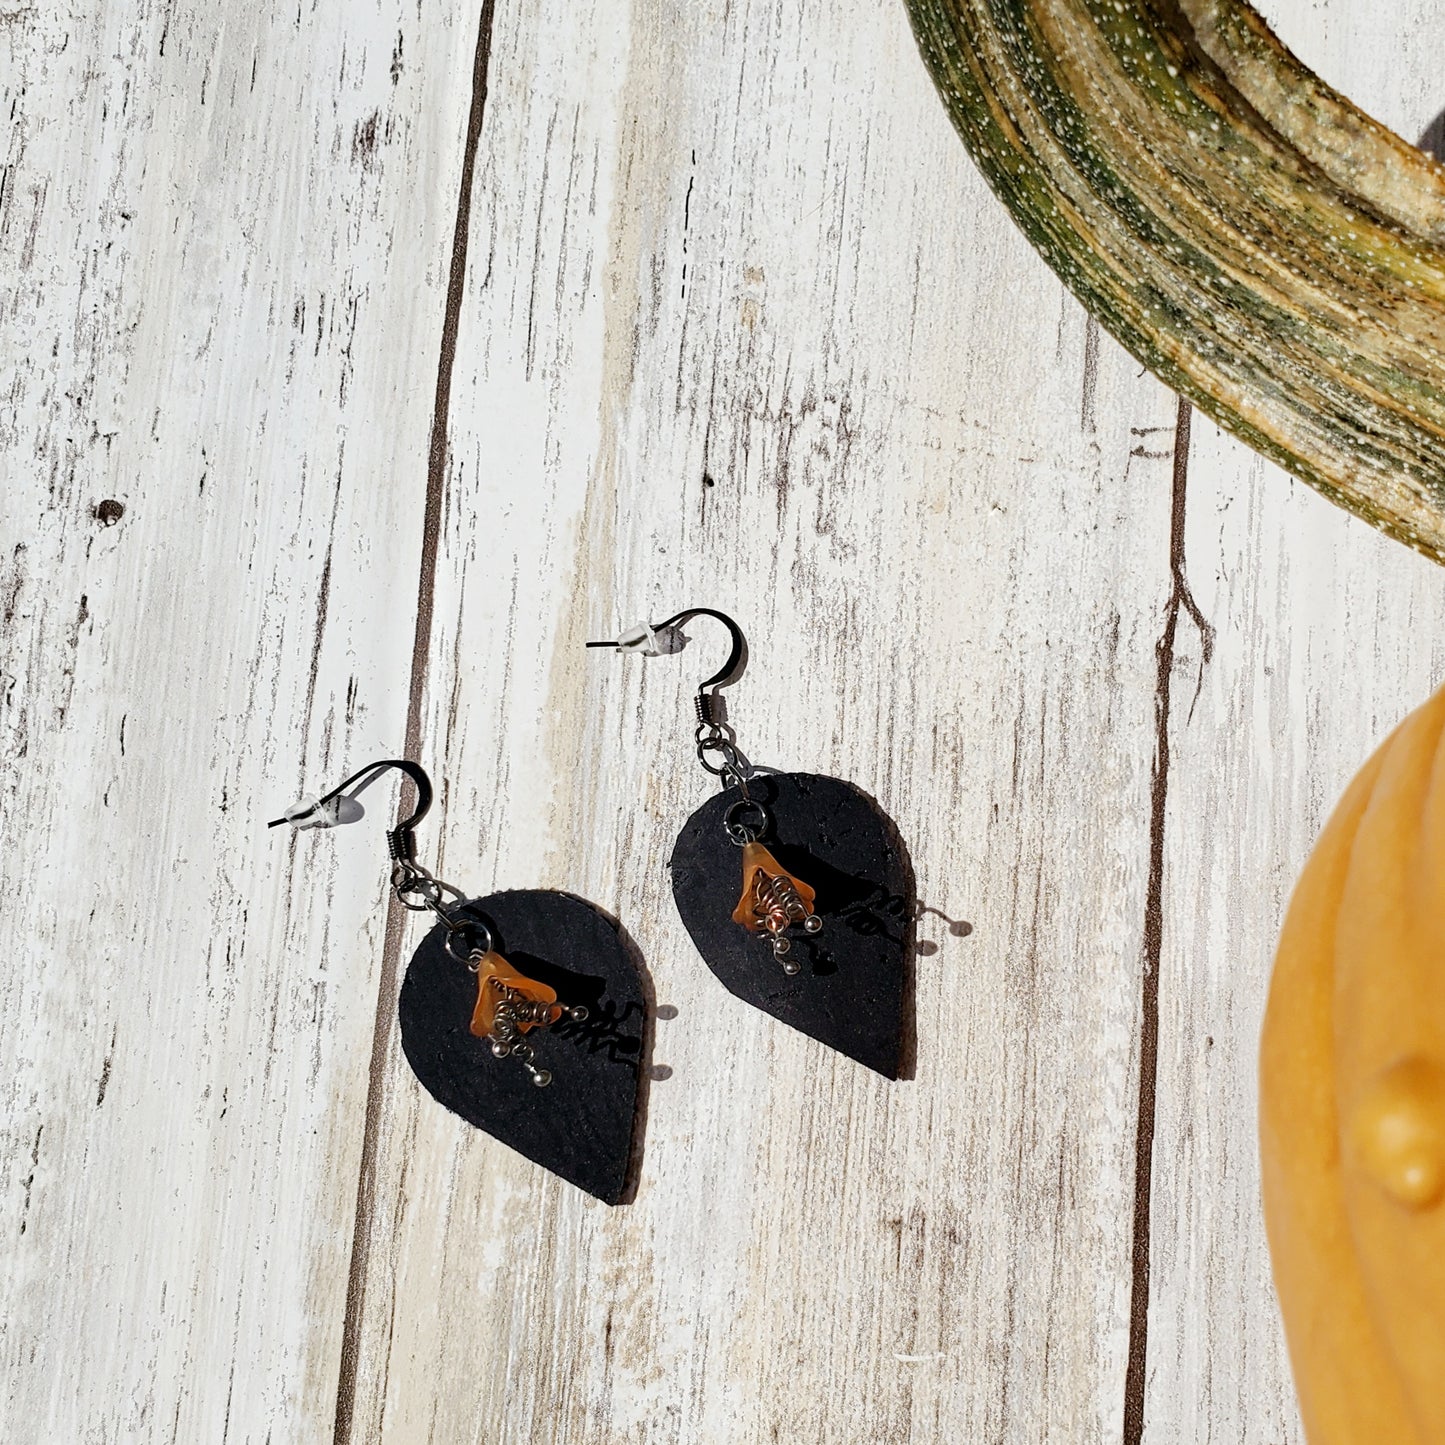 Belladonna - cork earrings - Halloween earrimgs - fall earrimgs - autumn earrings